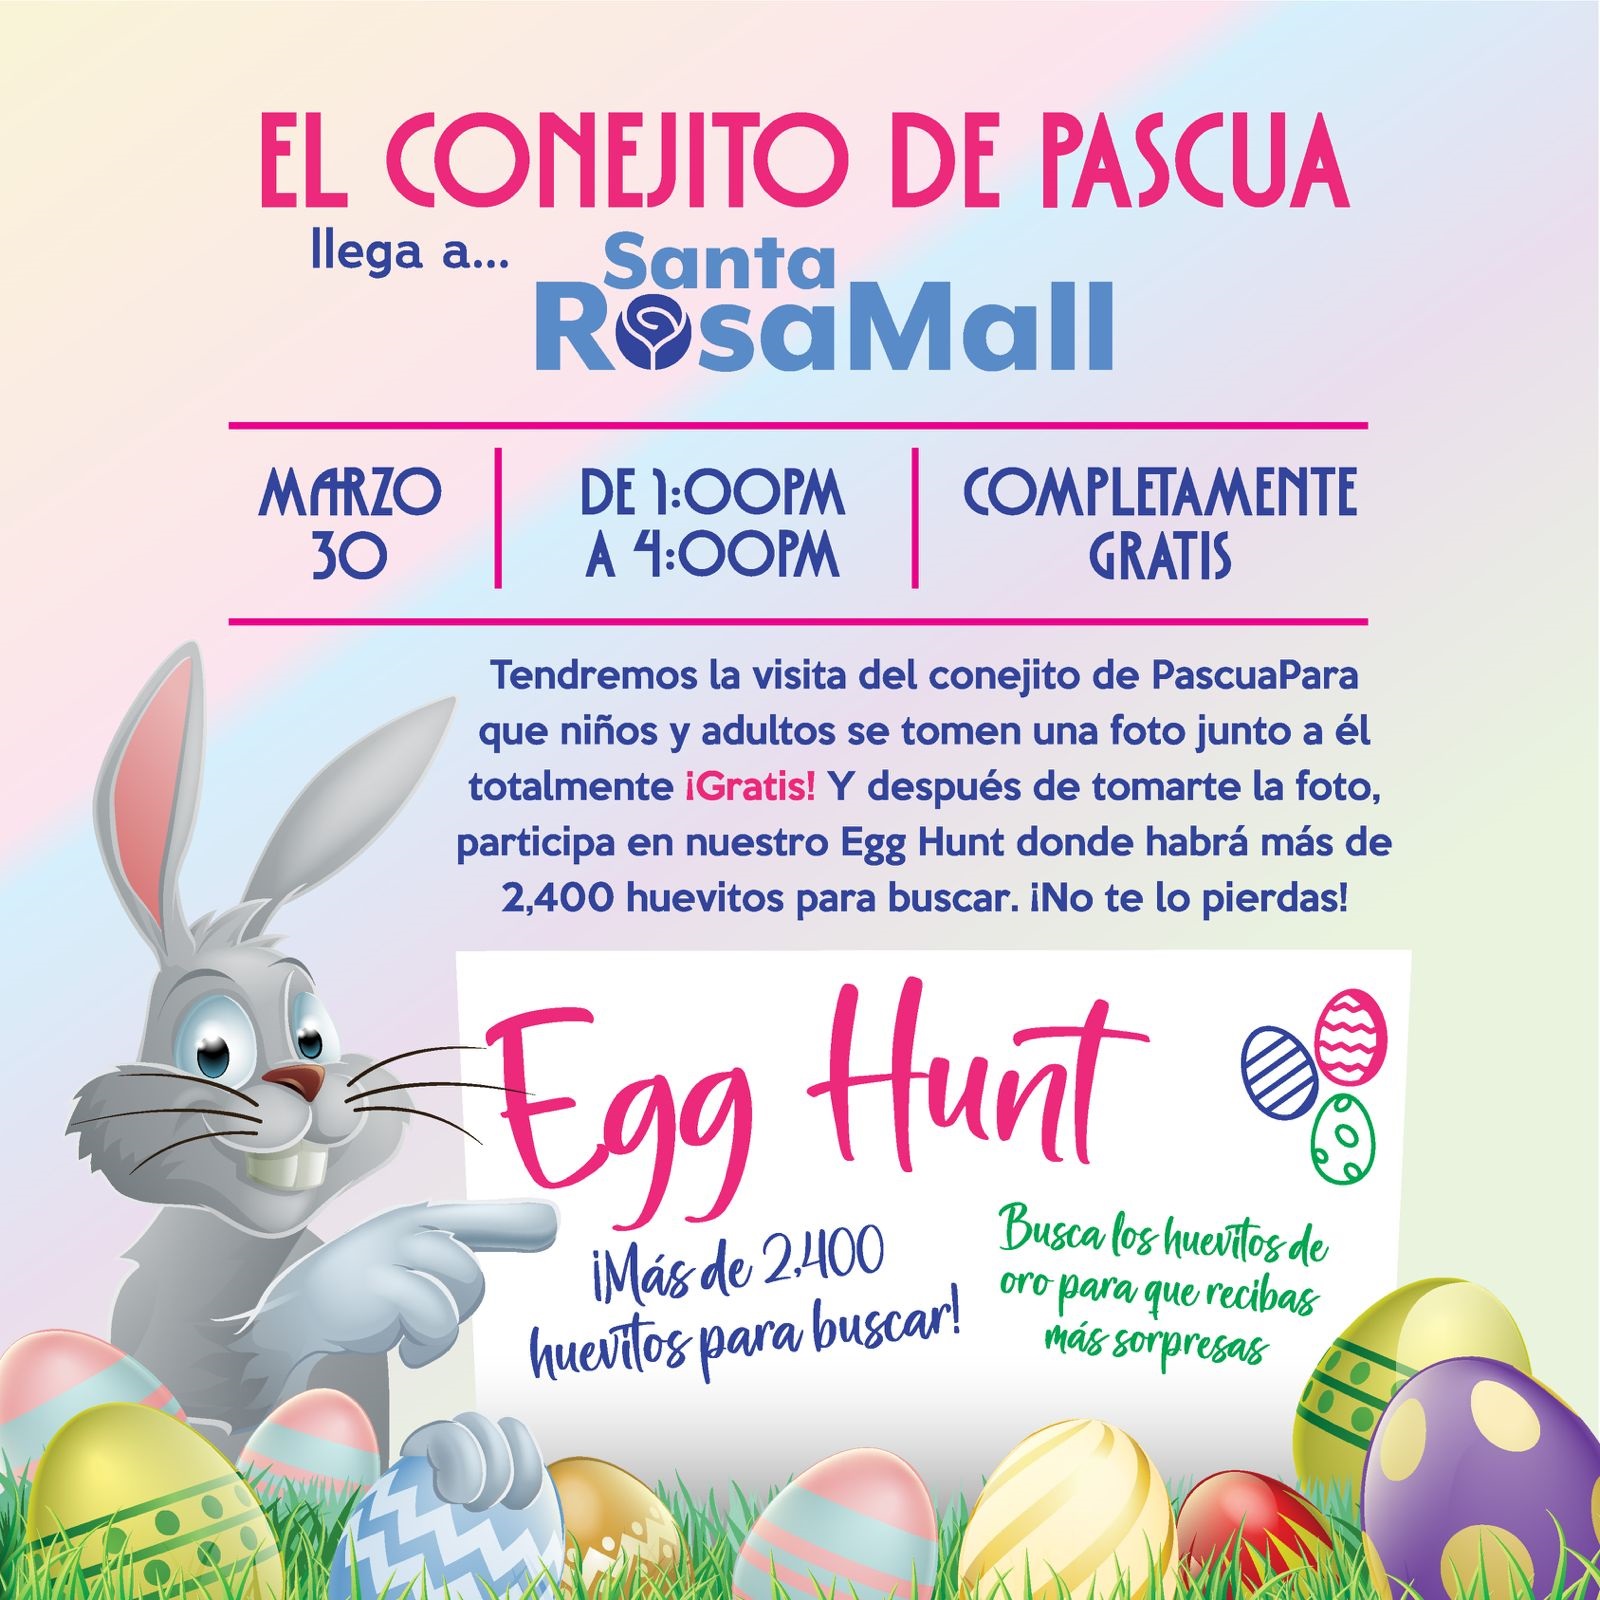 Promocion Egg Hung en Santa Rosa